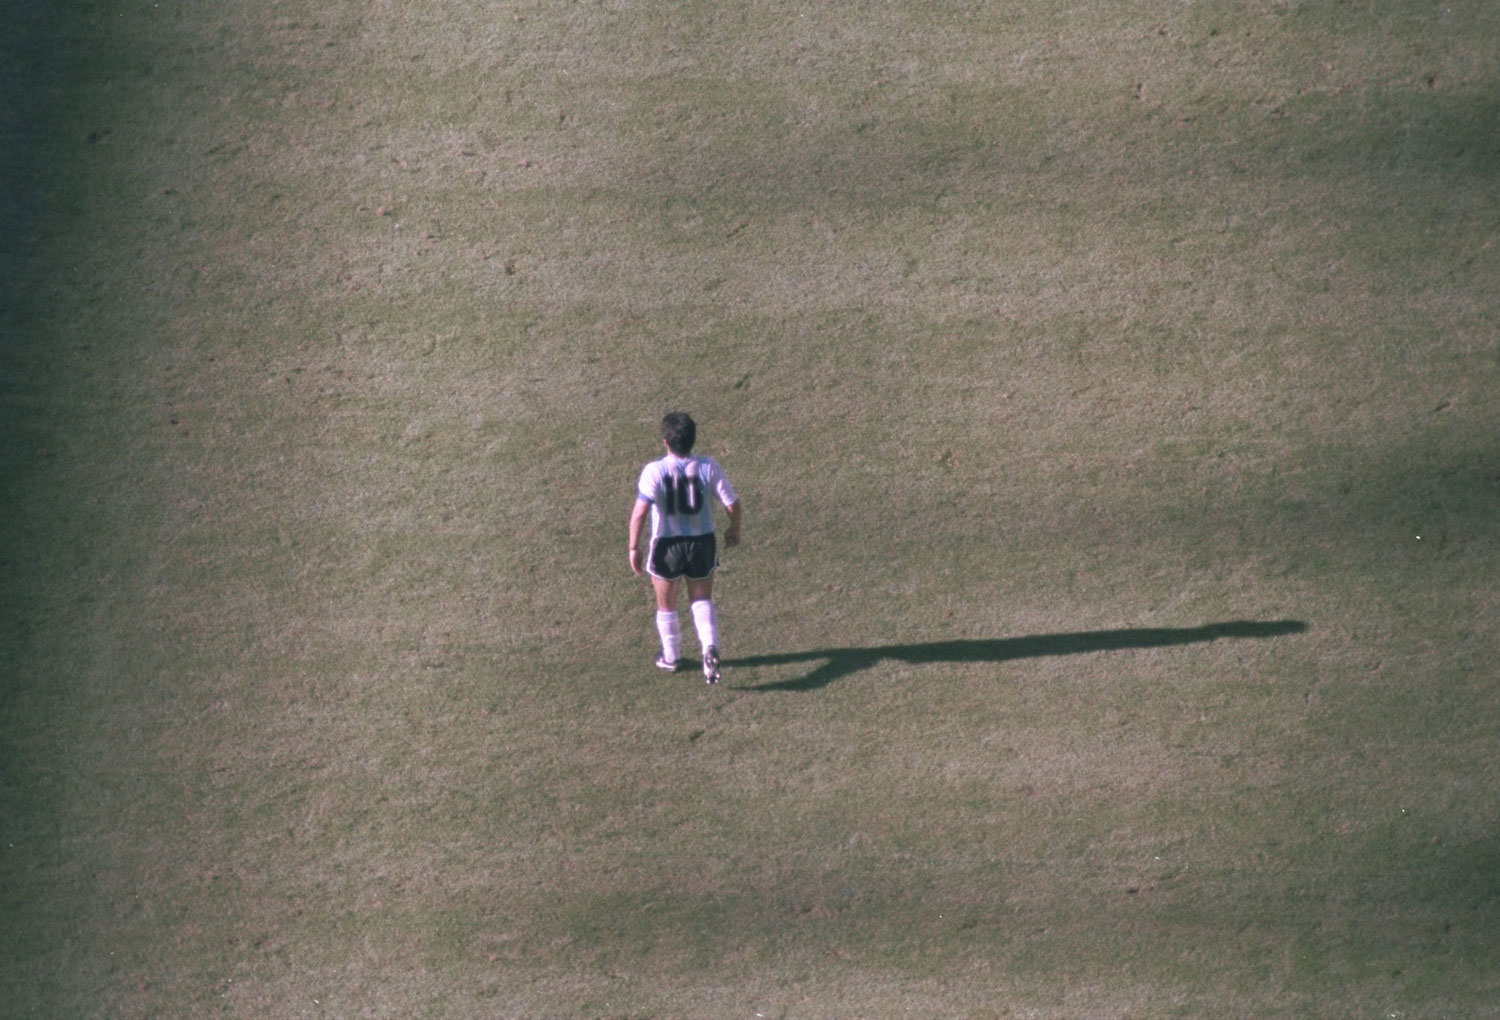 Maradona caminando en la cancha en el partido inaugural del Mundial '90 contra Camerún. ©Allsport /Allsport.